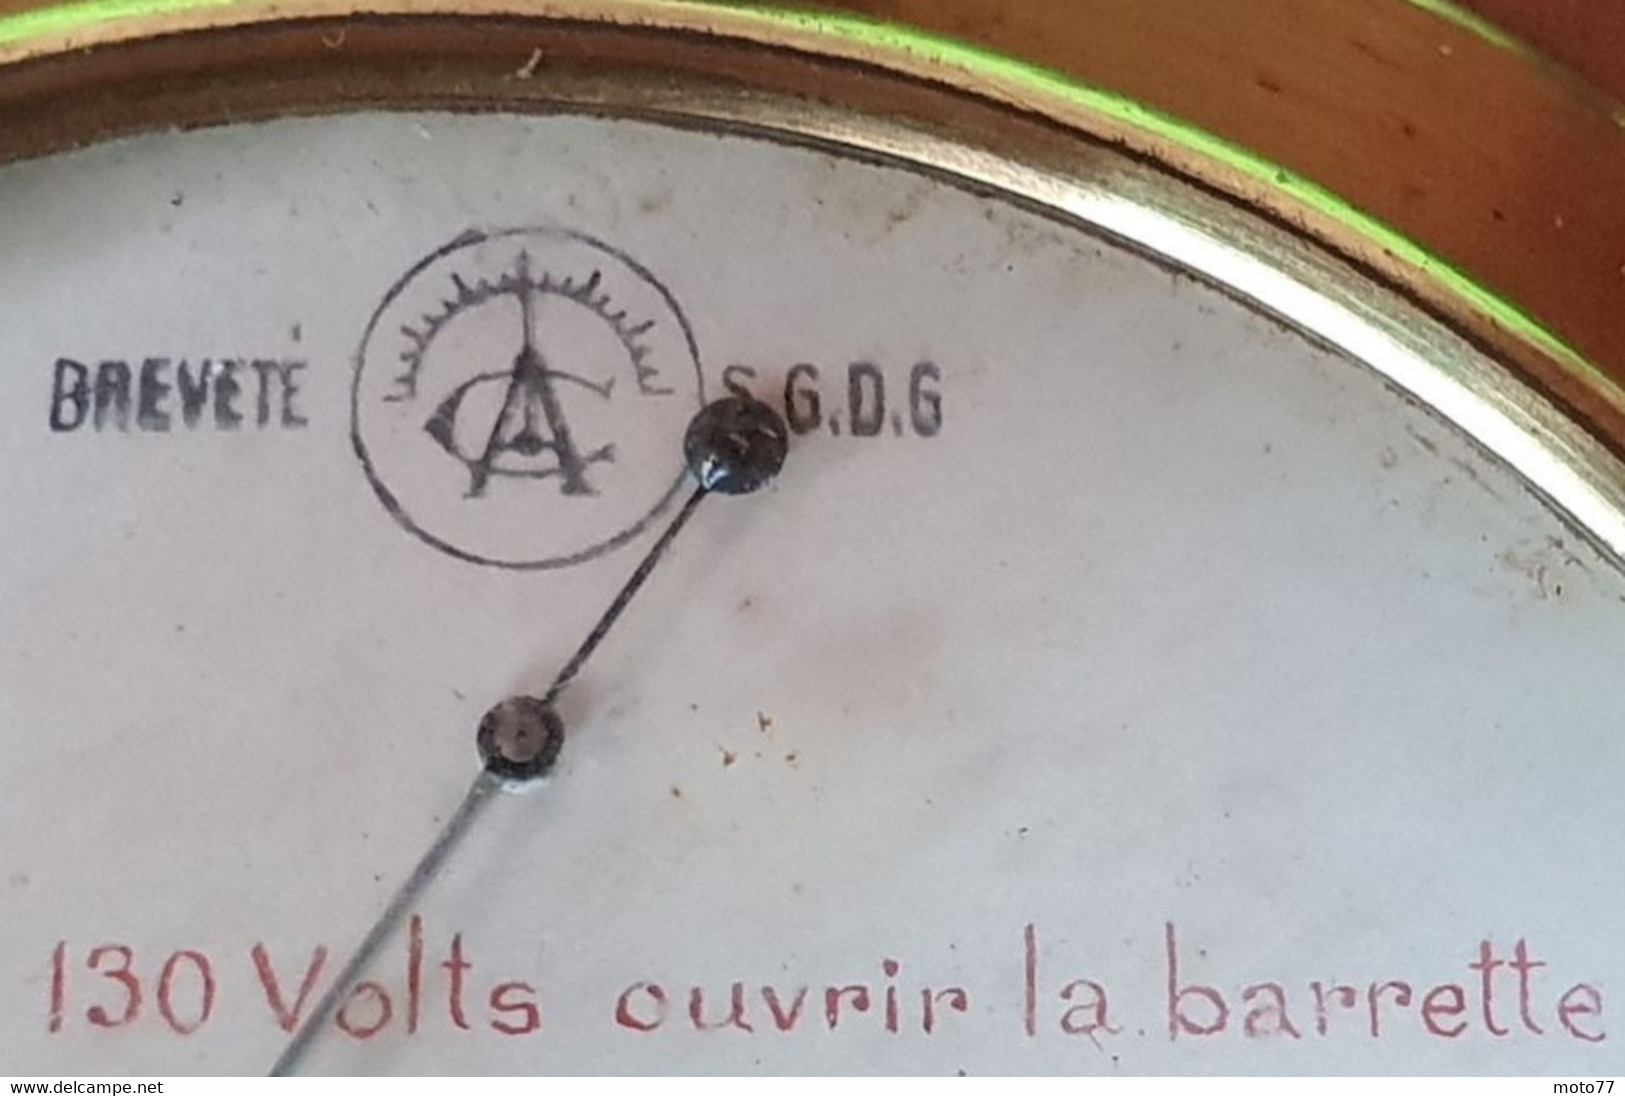 Ancien APPAREIL ÉLECTRIQUE WATTMÈTRE de 0 à 65 watts - Bois Laiton Métal Fil coton - vers 1900 1920